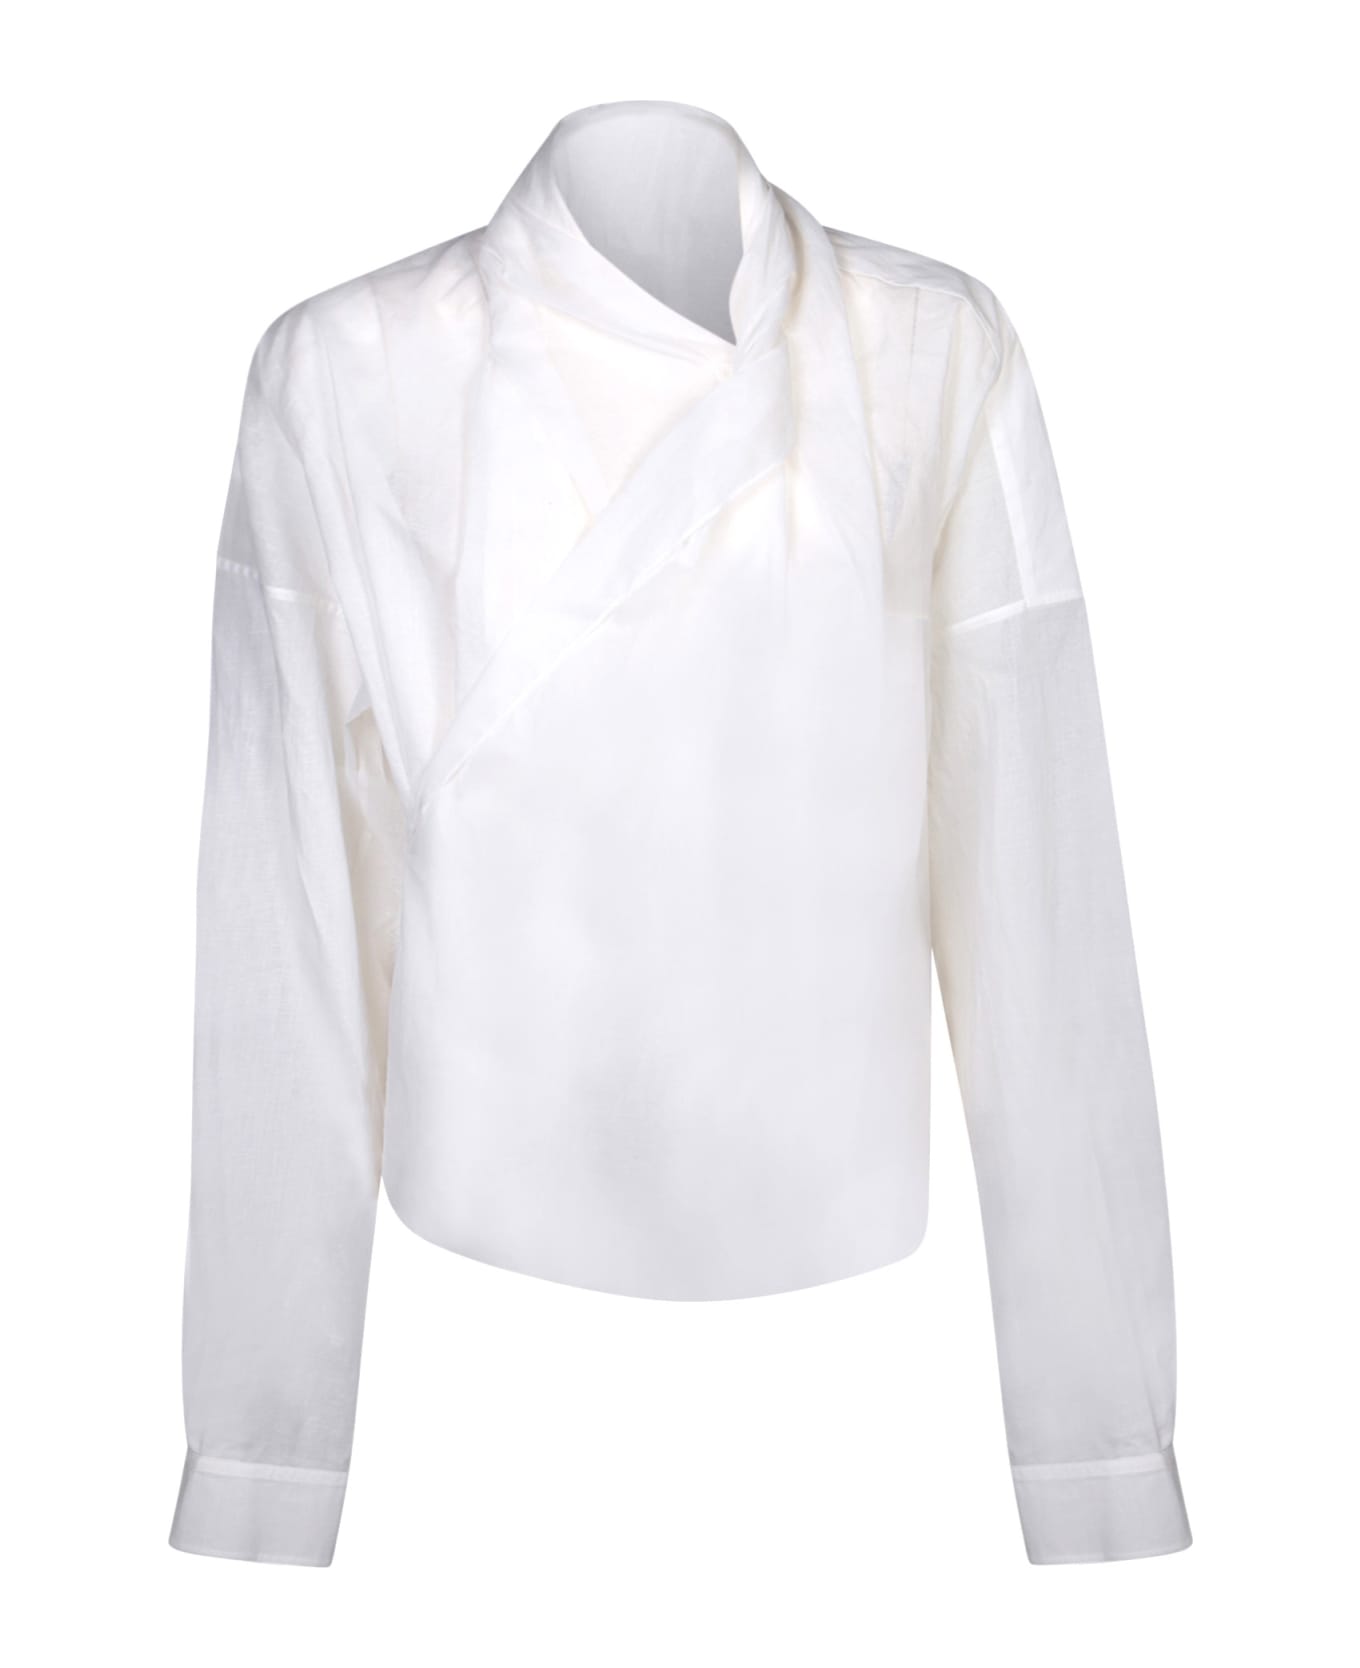 Quira White Wrap Shirt - White ブラウス